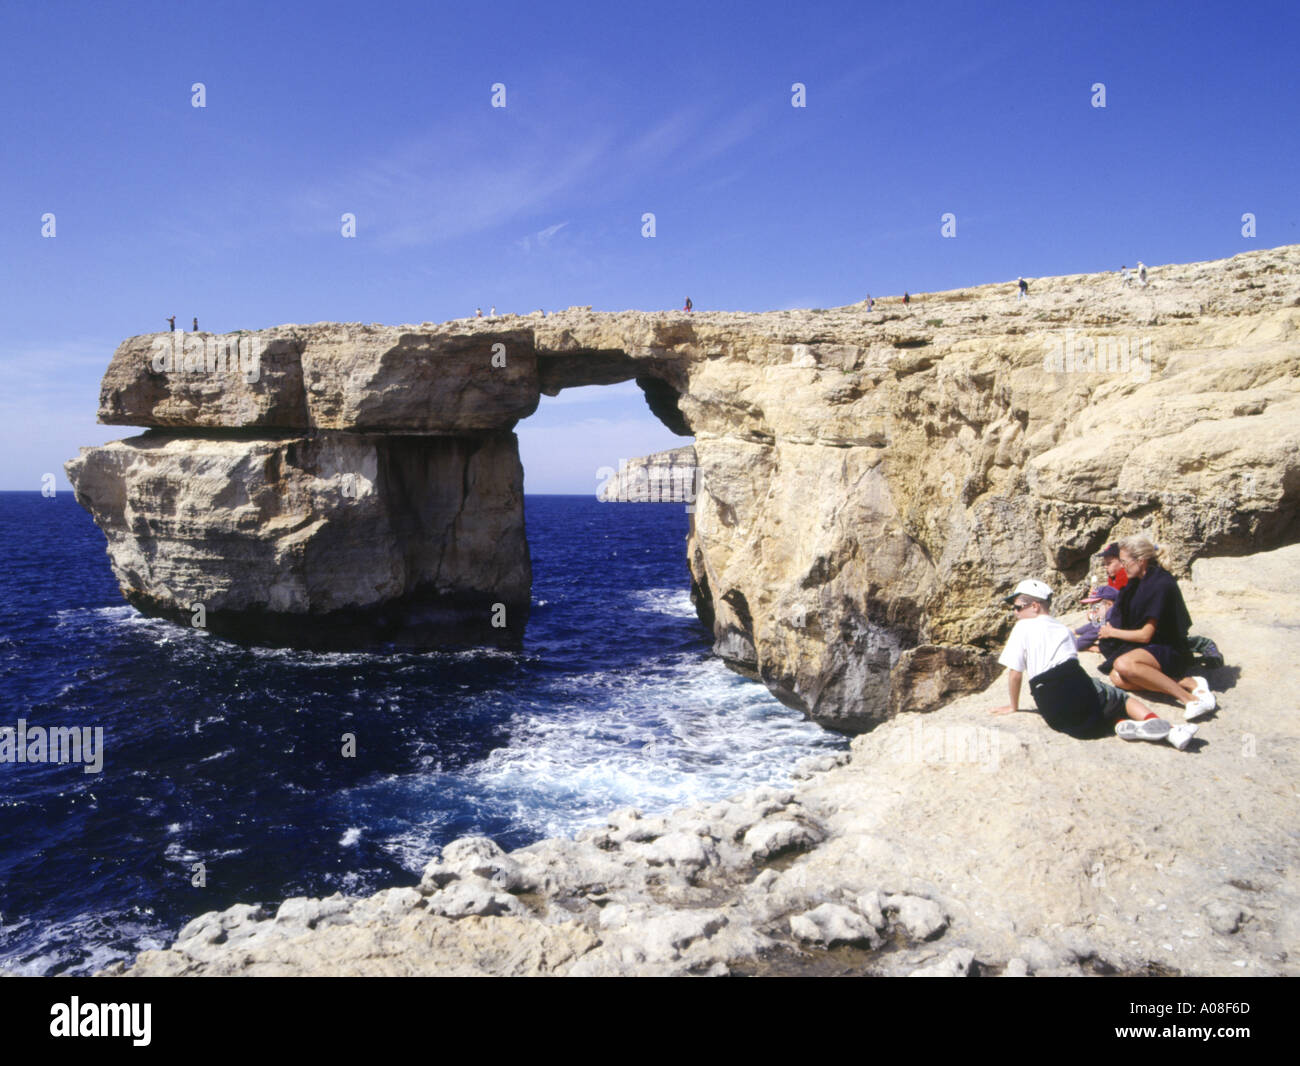 dh Azure Window DWEJRA PUNTO GOZO Seacliffs di roccia naturale arco e famiglia turistica malta mare turisti isola cielo blu Foto Stock